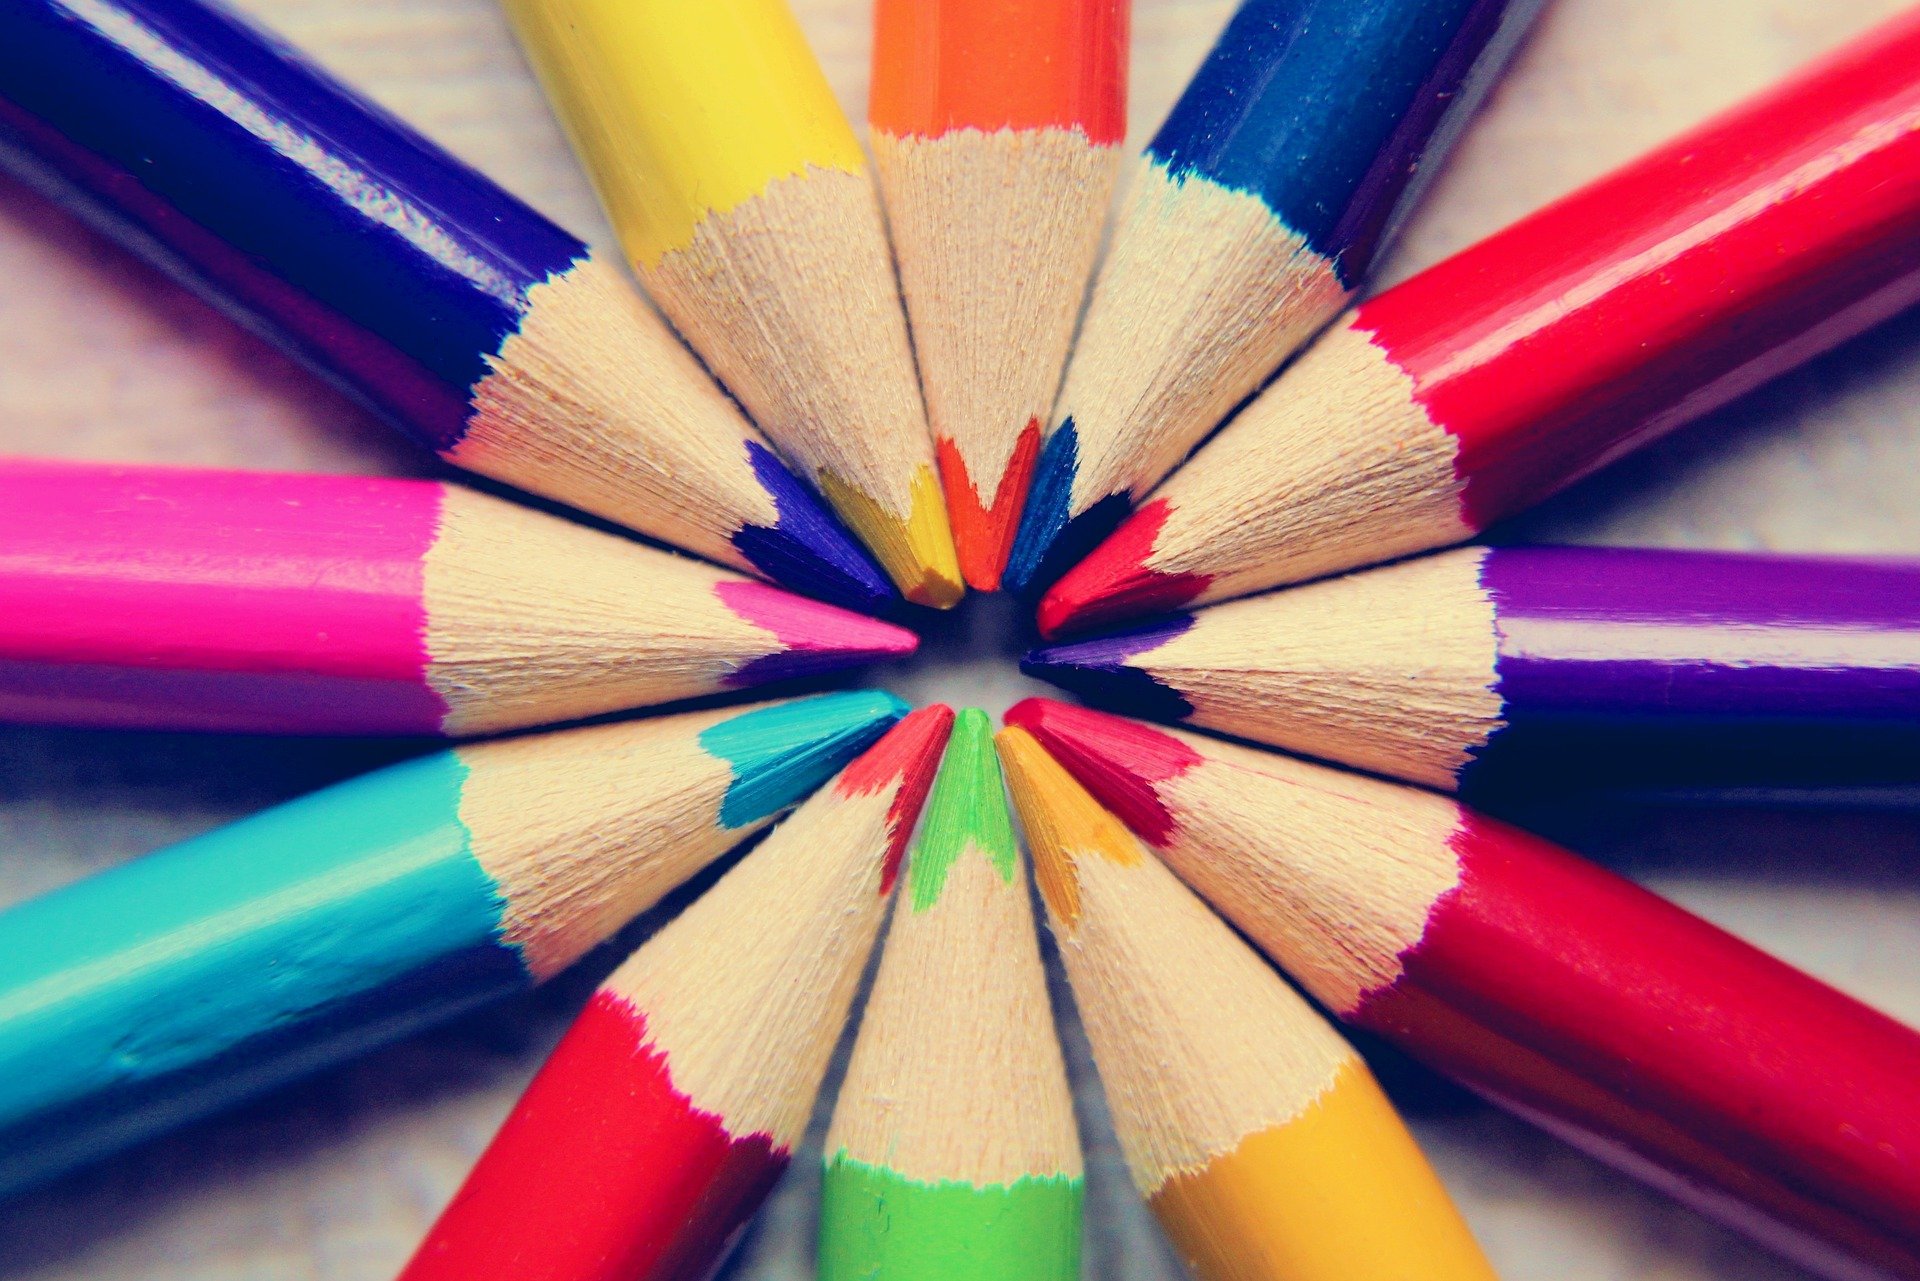 Enllaç al web 'Estudiar a Catalunya' - Imatge de llapissos de colors.